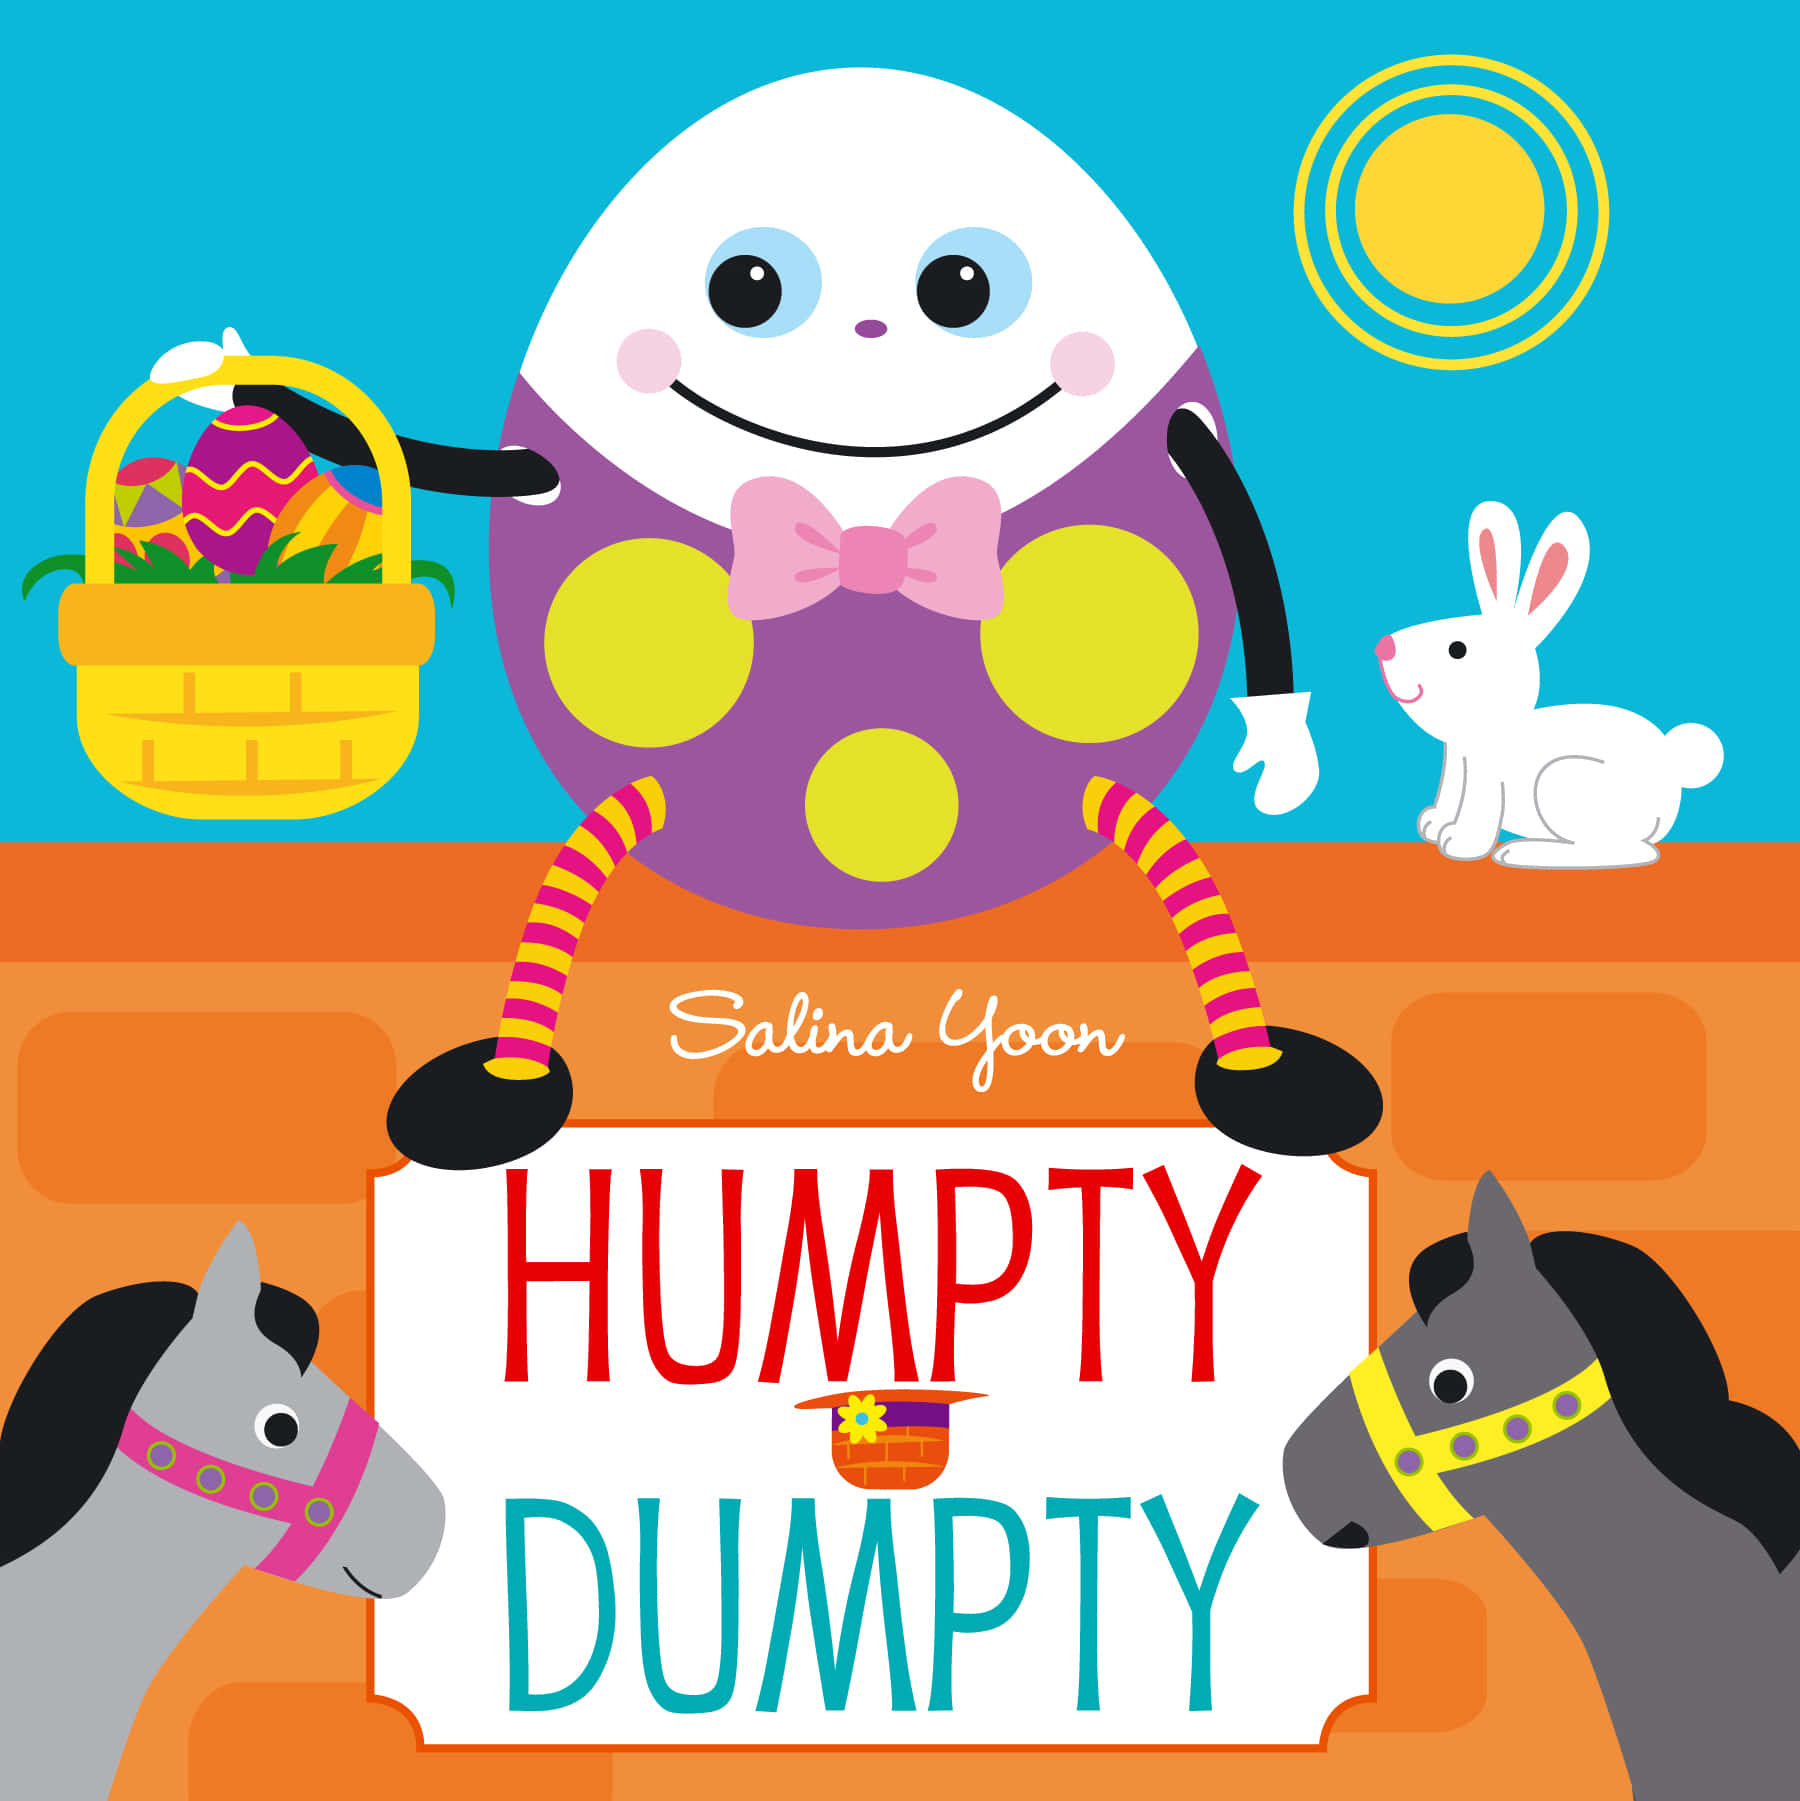 Un'interpretazioneunica Del Personaggio Della Classica Filastrocca, Humpty Dumpty Seduto Su Un Muro.